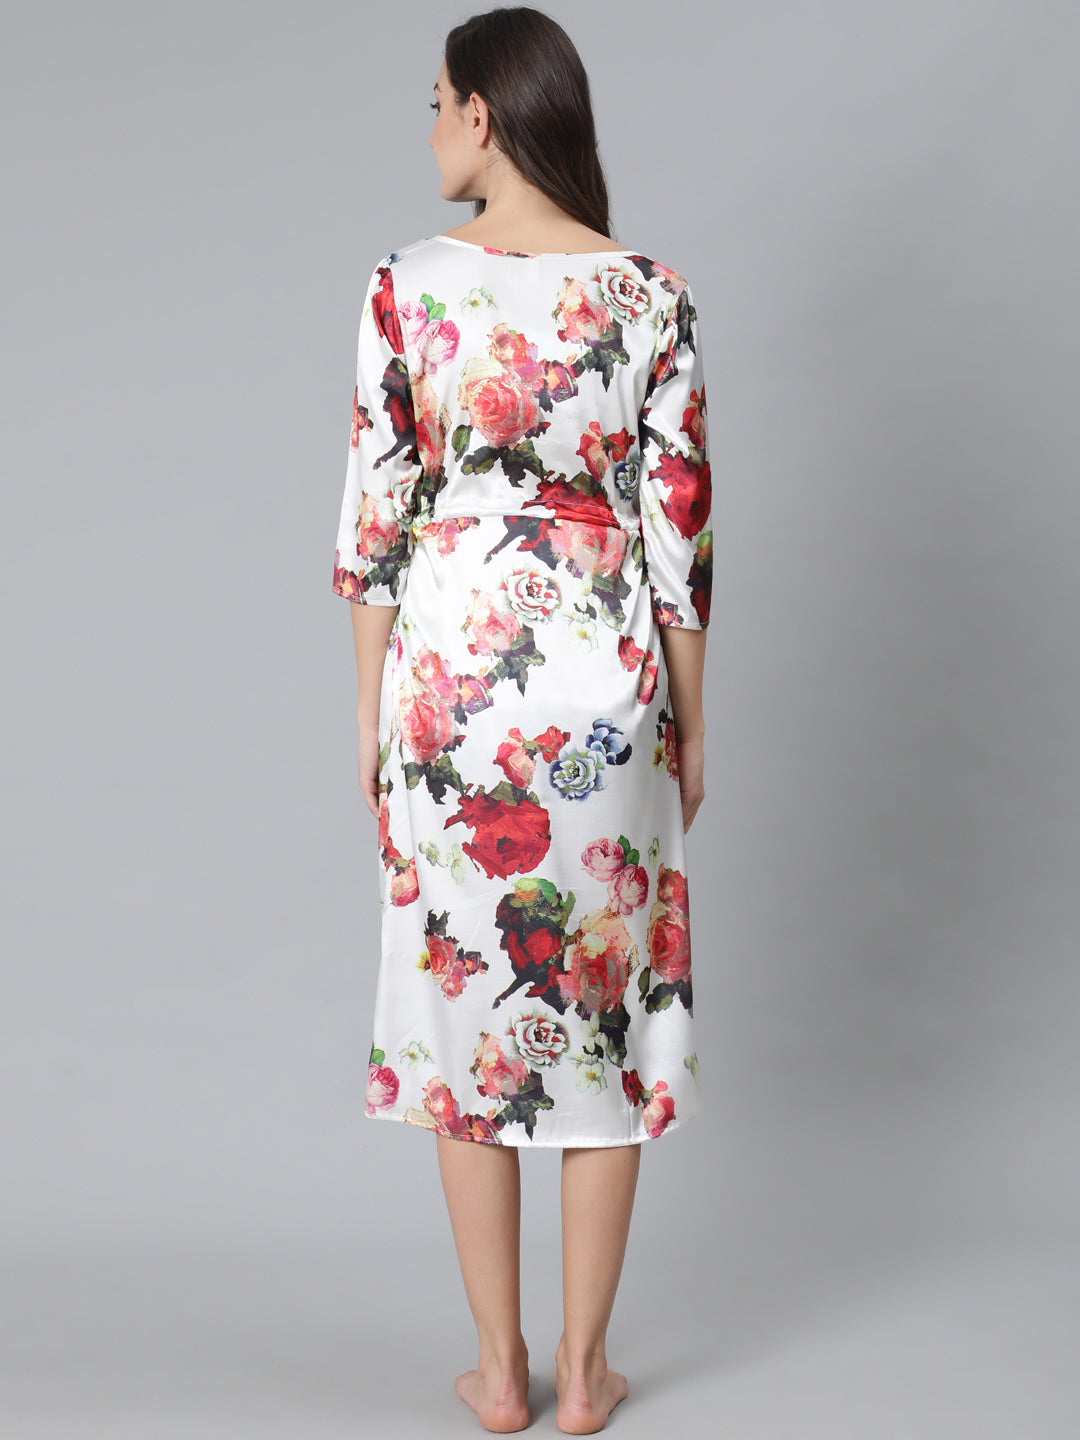 Women's White Floral Print Night Dress - Aks